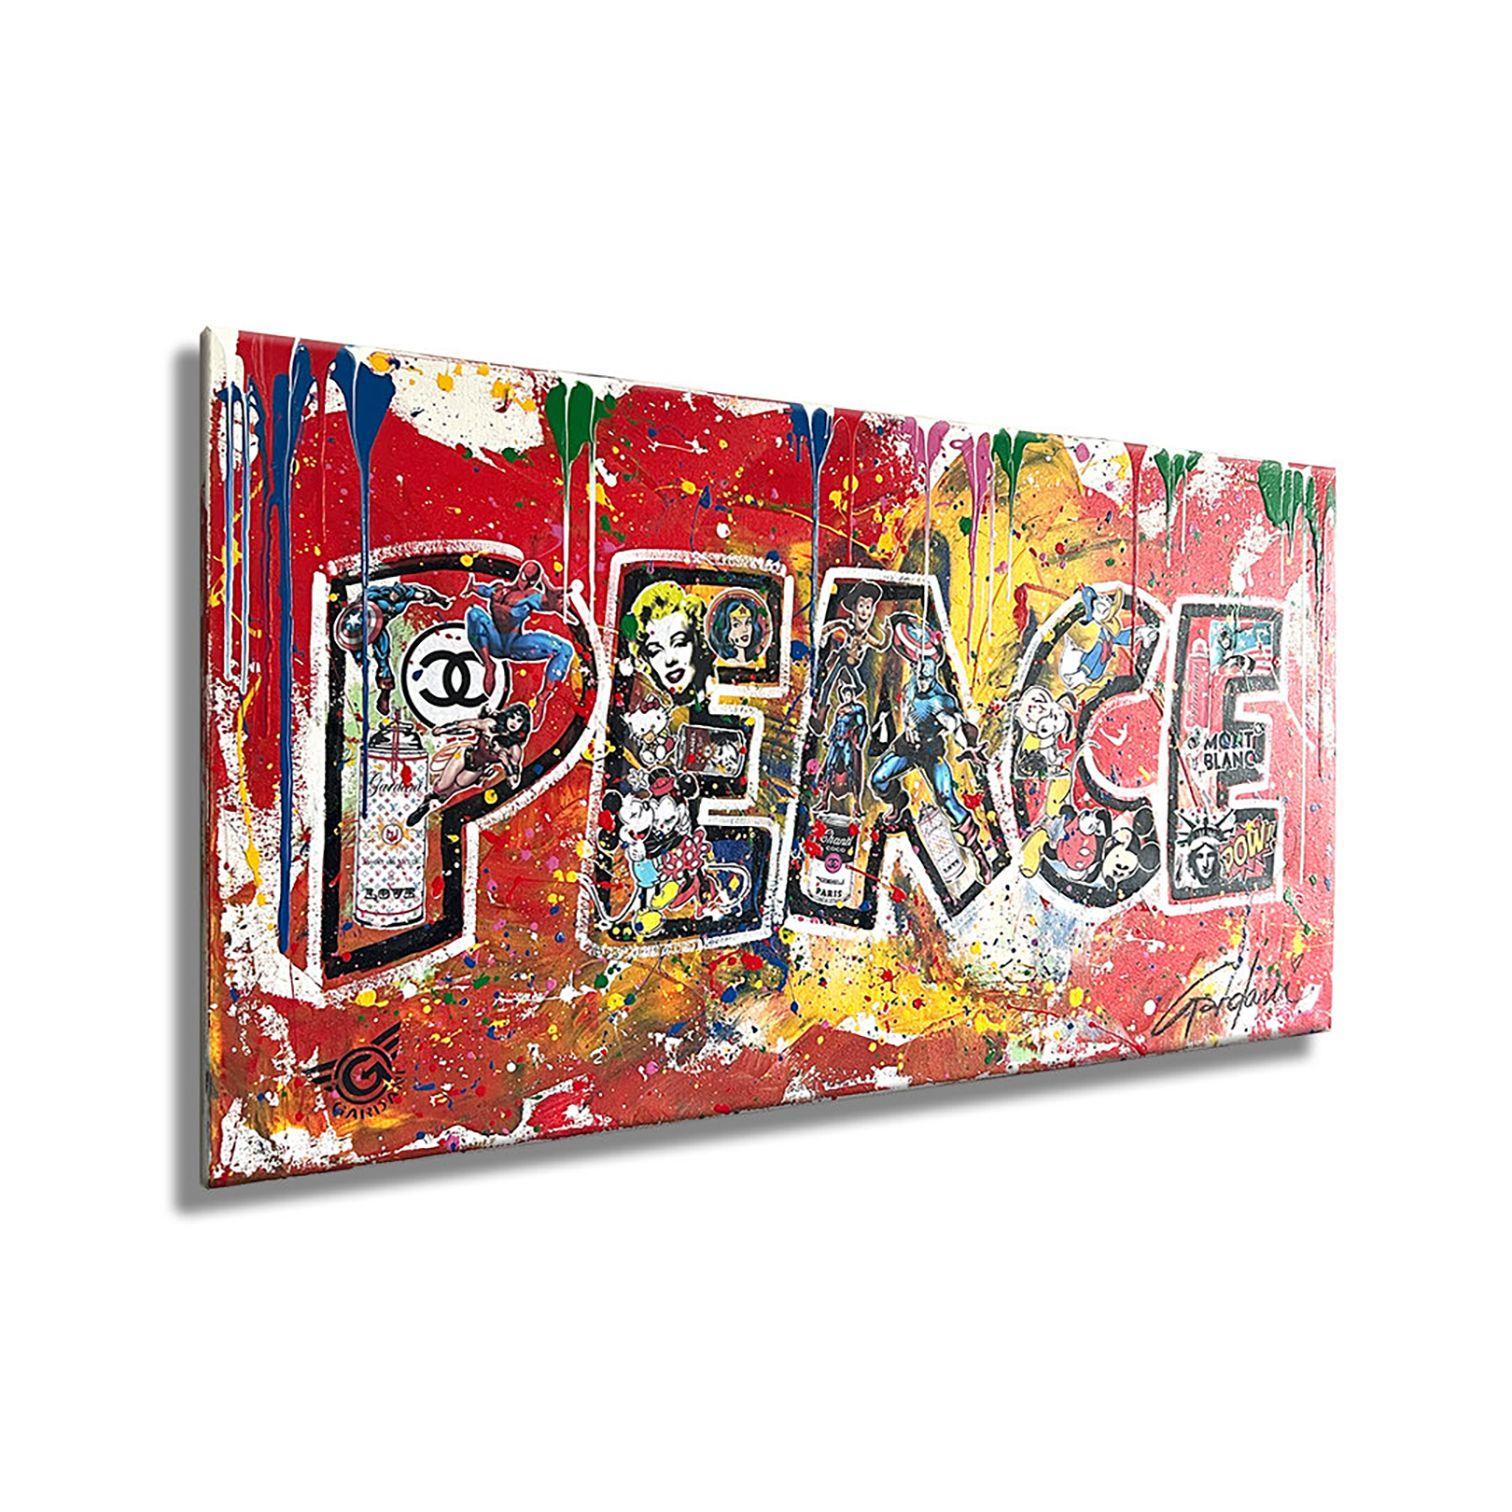 La paix  Peinture originale sur toile, peinture, acrylique sur toile - Pop Art Painting par Gardani Art